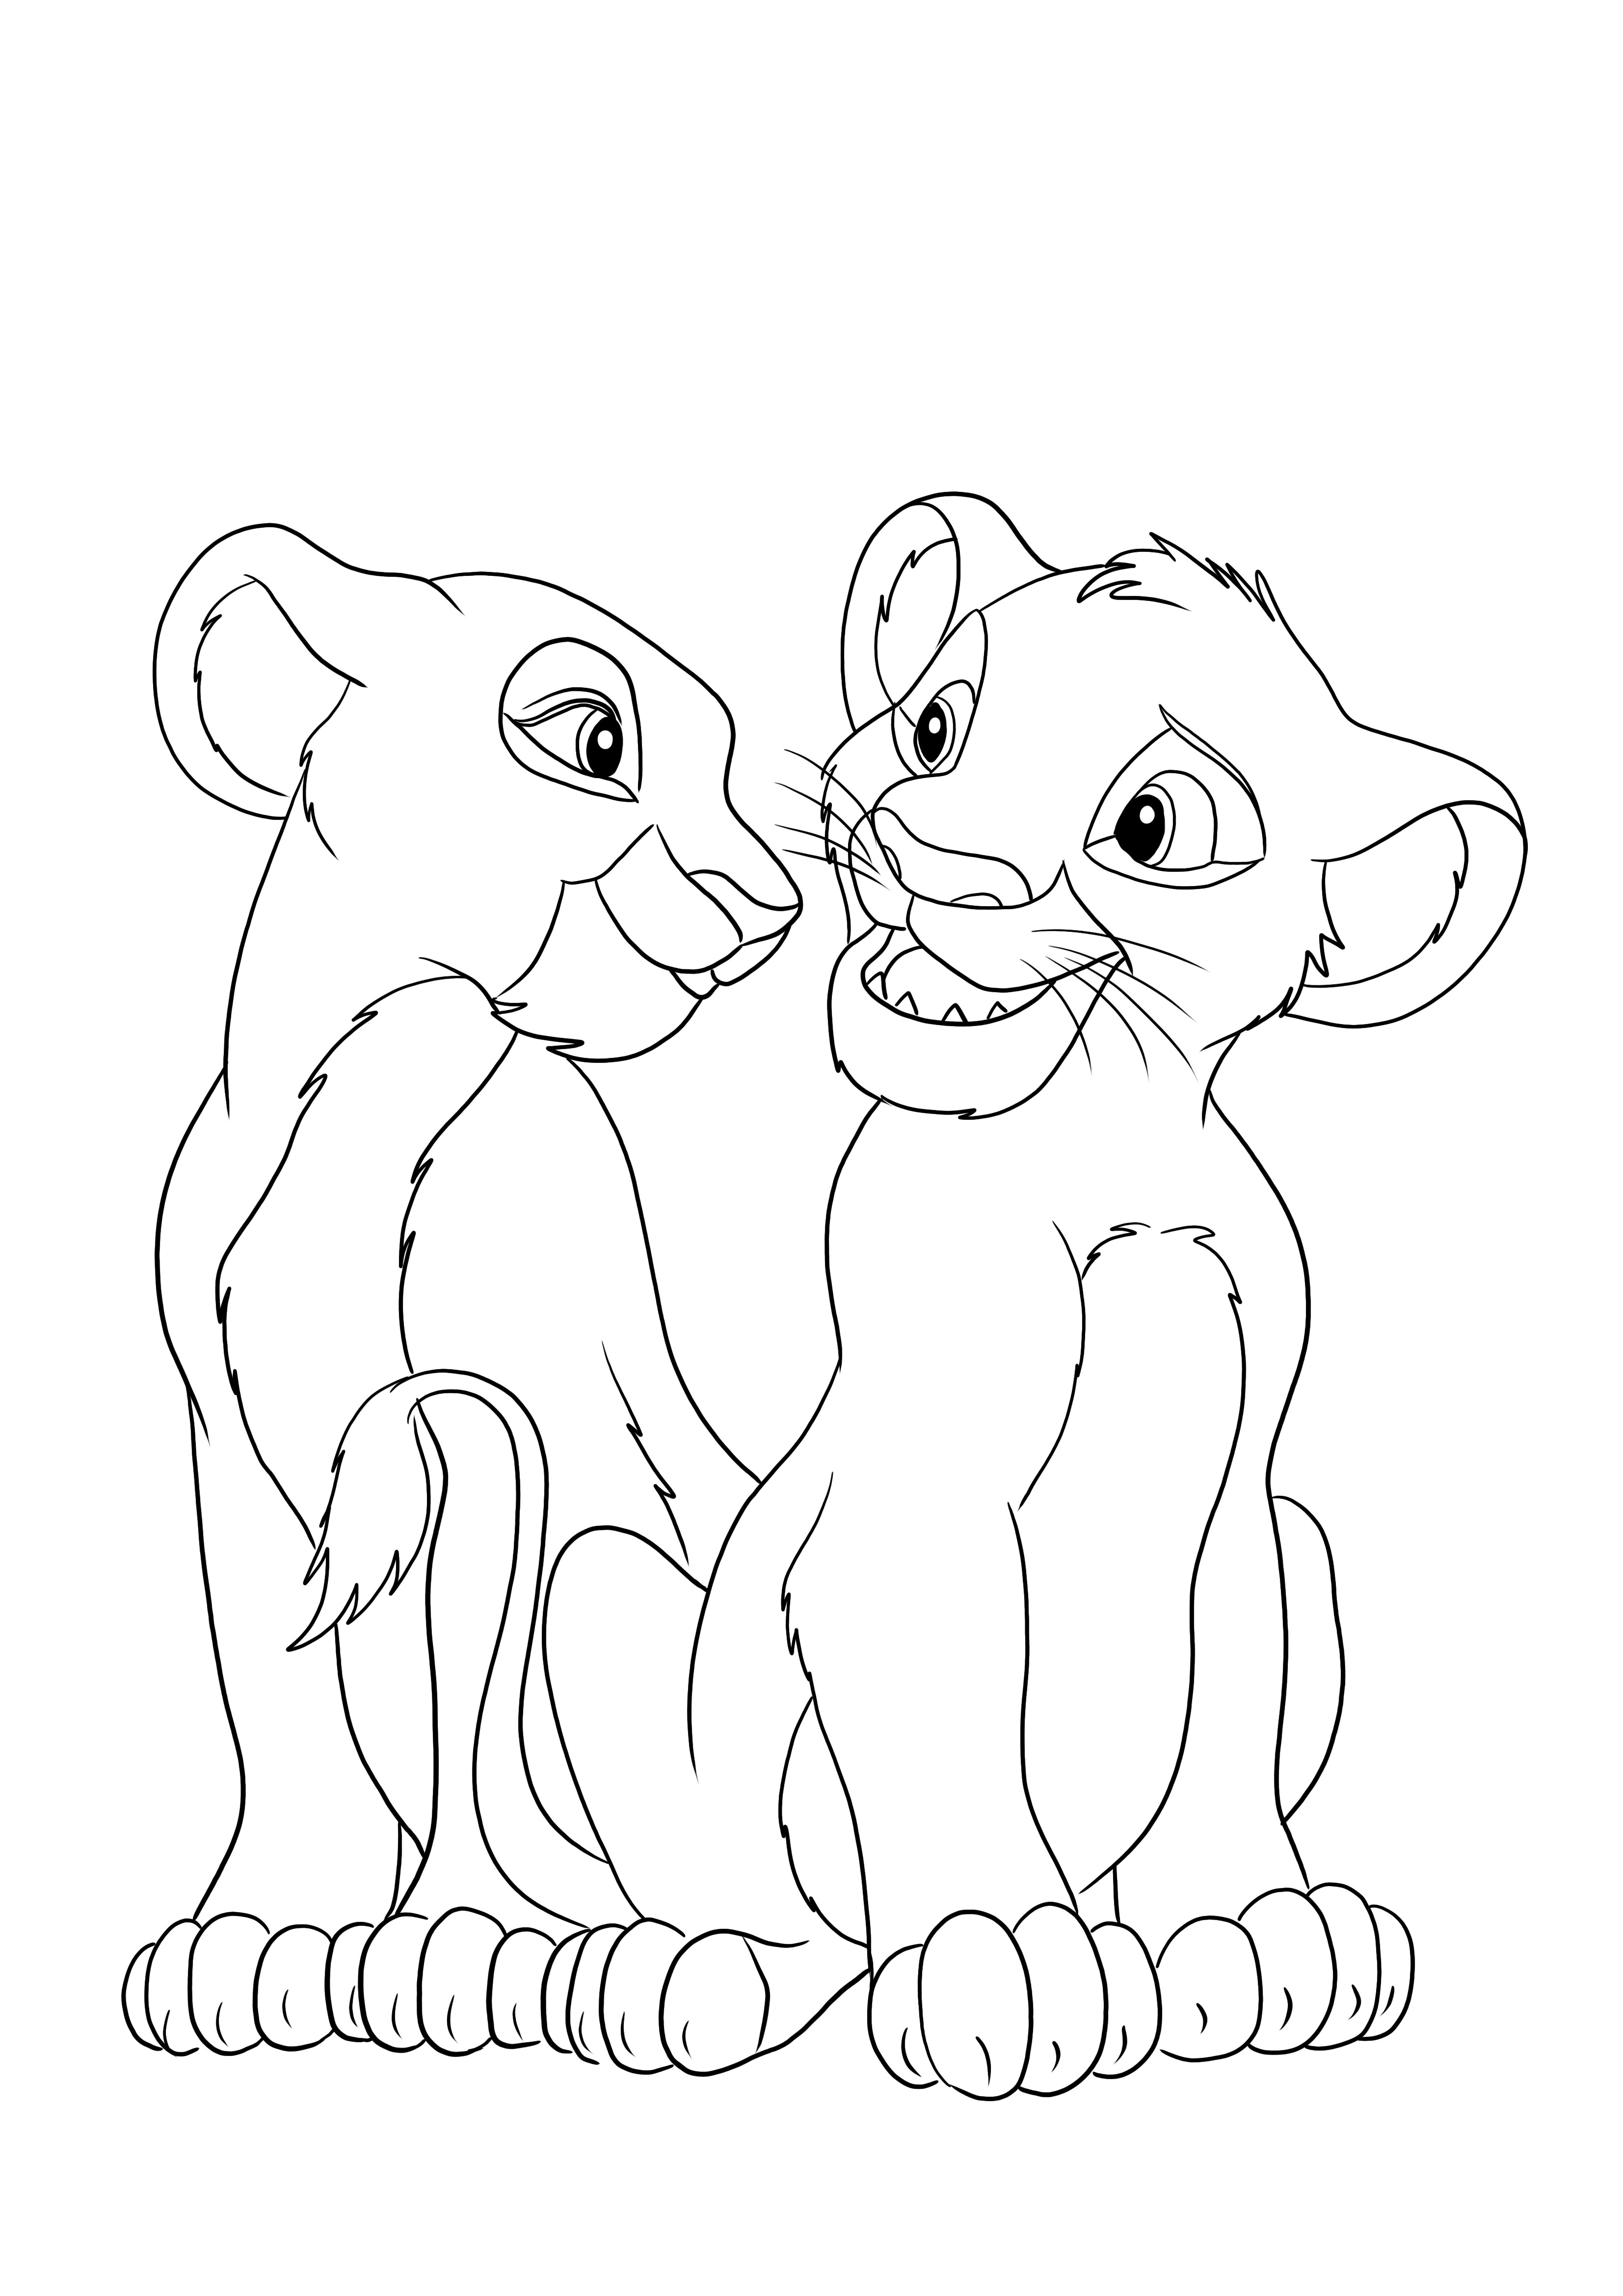 Una imagen para colorear gratis de Simba reflejando para imprimir y disfrutar del tiempo para colorear